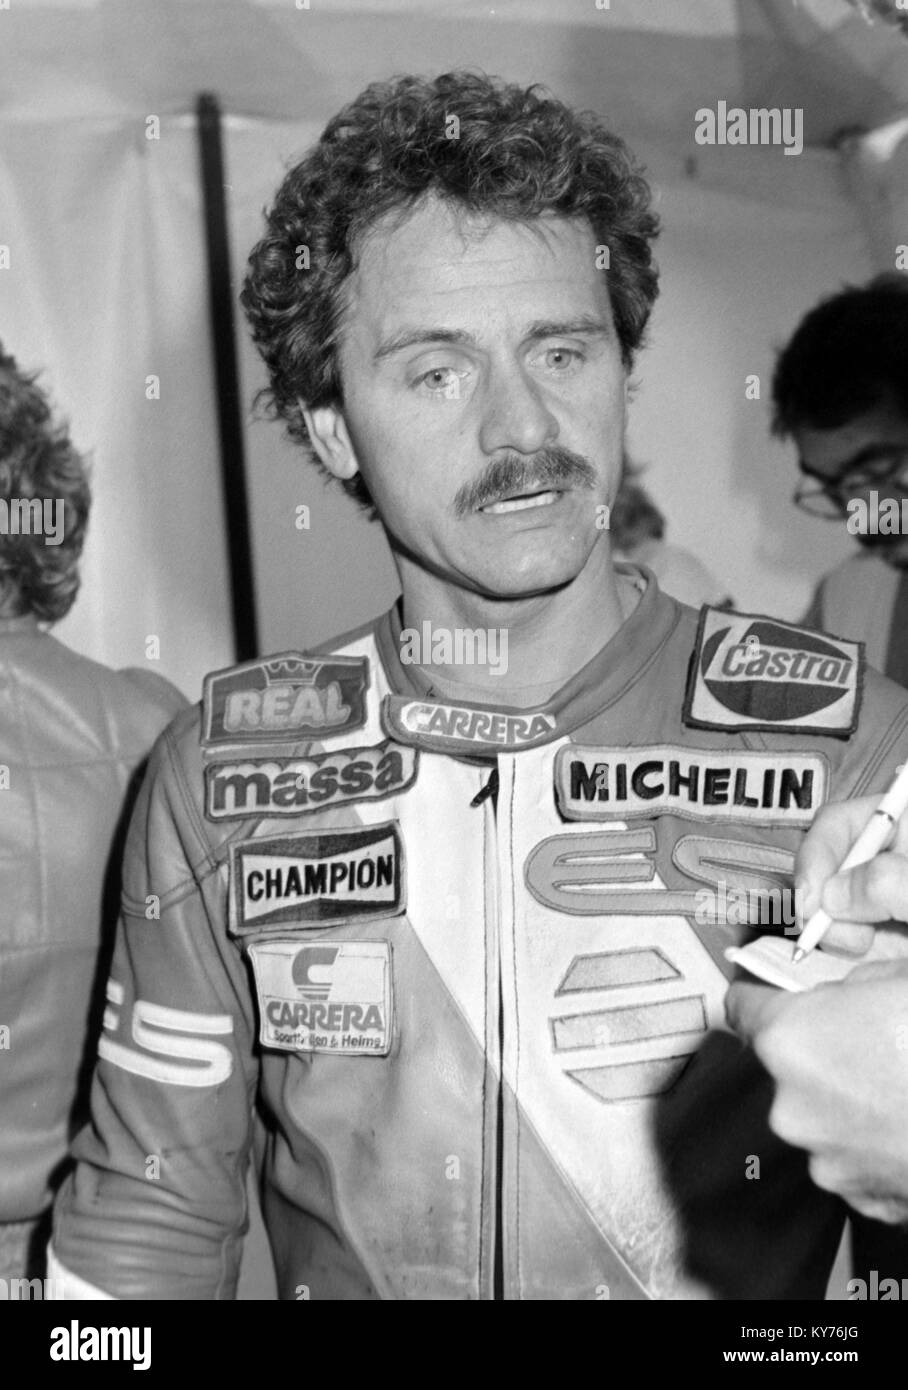 Manfred Herweh at the 1985 British motorcycle Grand Prix Moto GP. Stock Photo